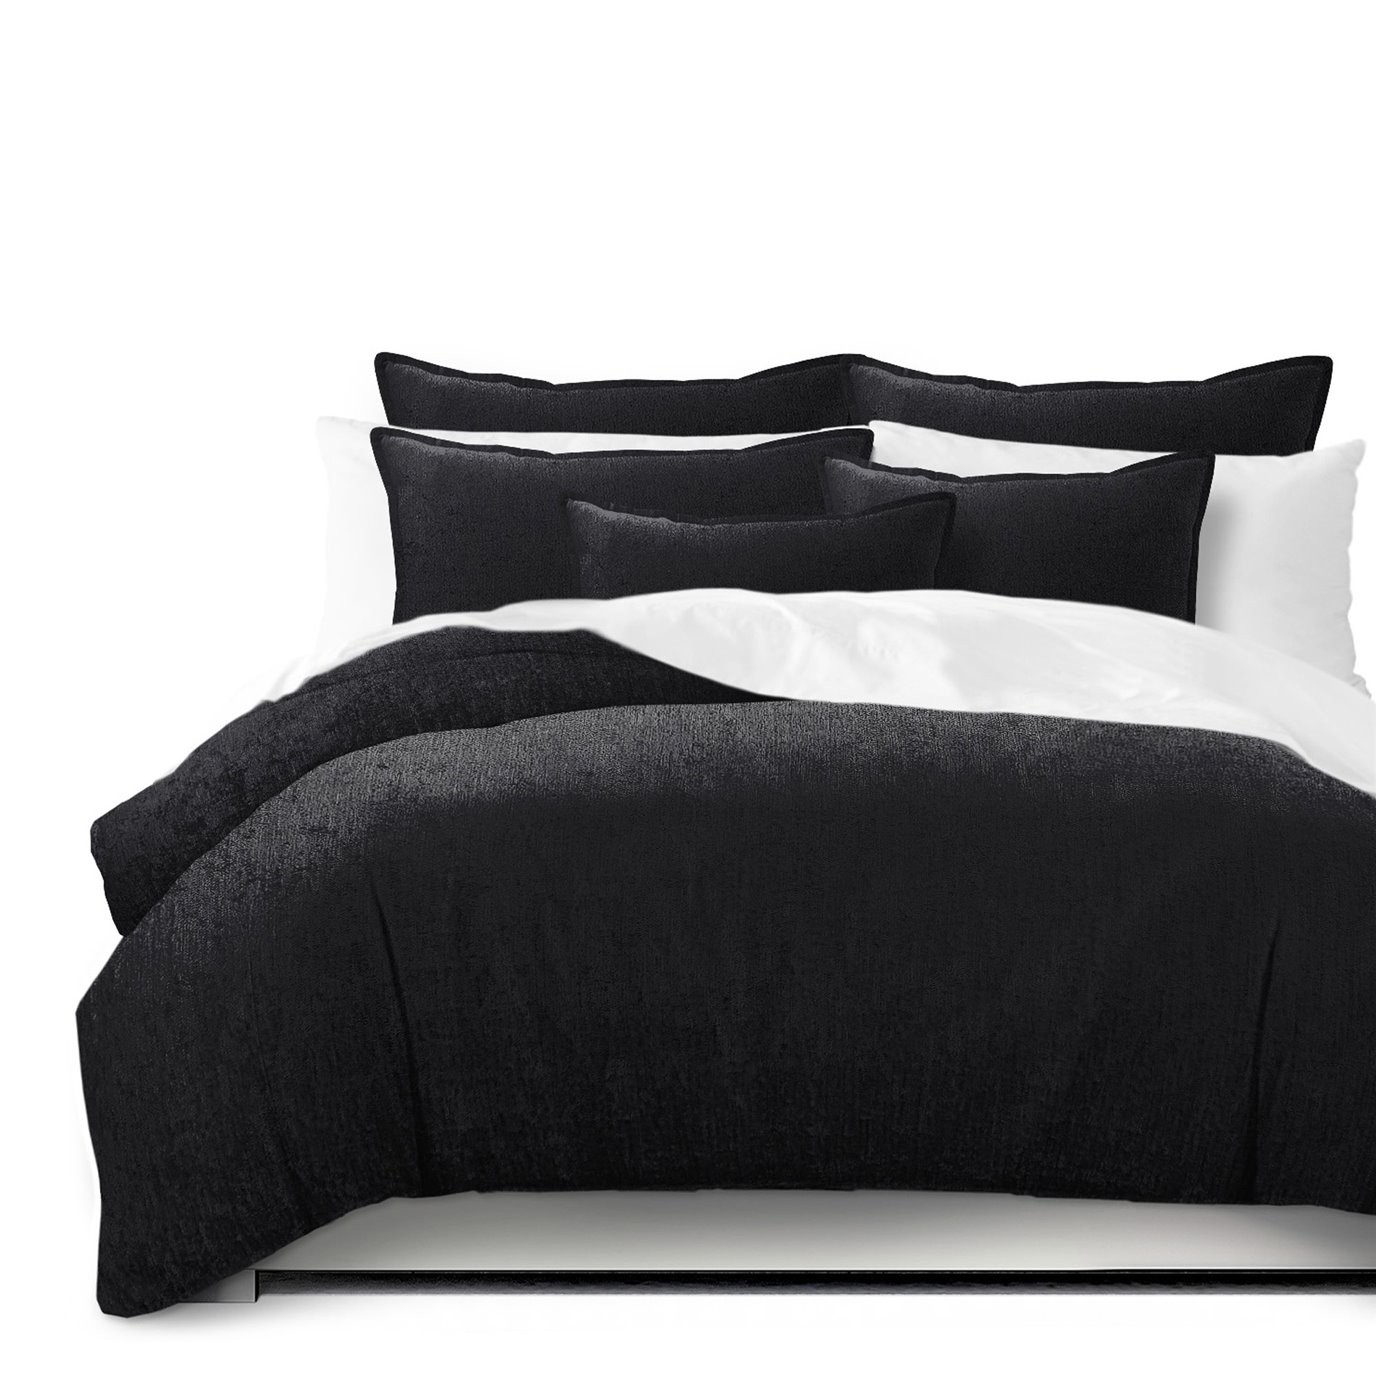 Juno Velvet Black Comforter and Pillow Sham(s) Set - Size Full